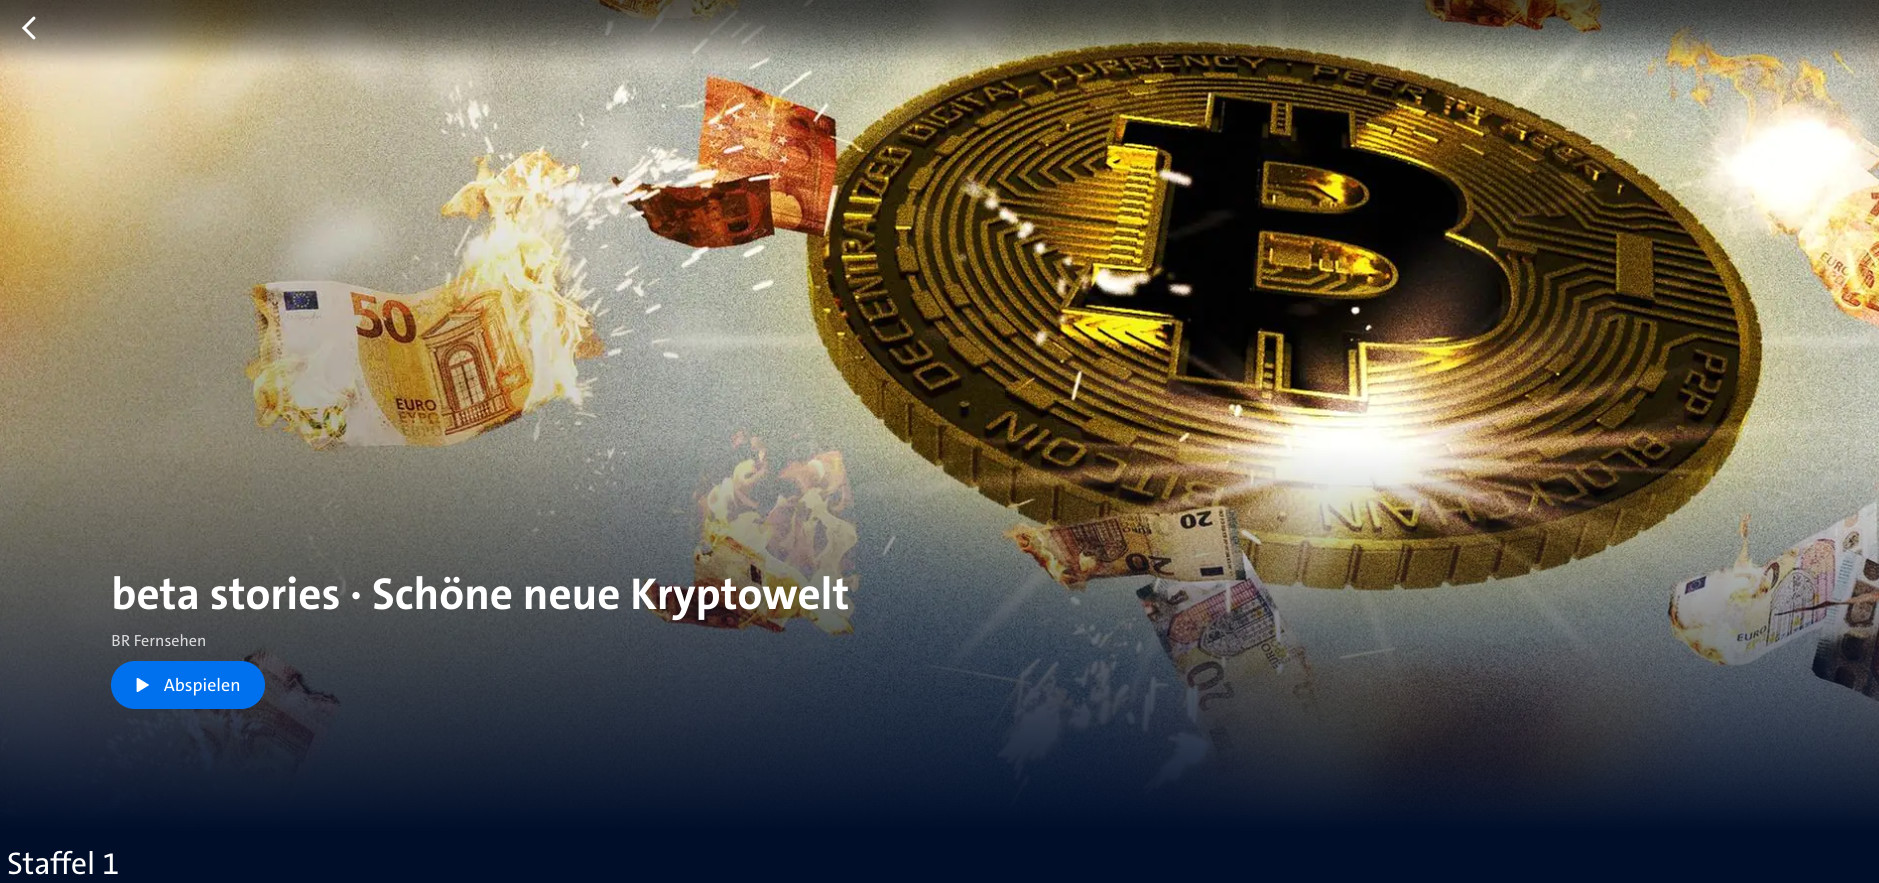 Bayerischer Rundfunk: Folge 1: Bitcoin, Die große Verheissung